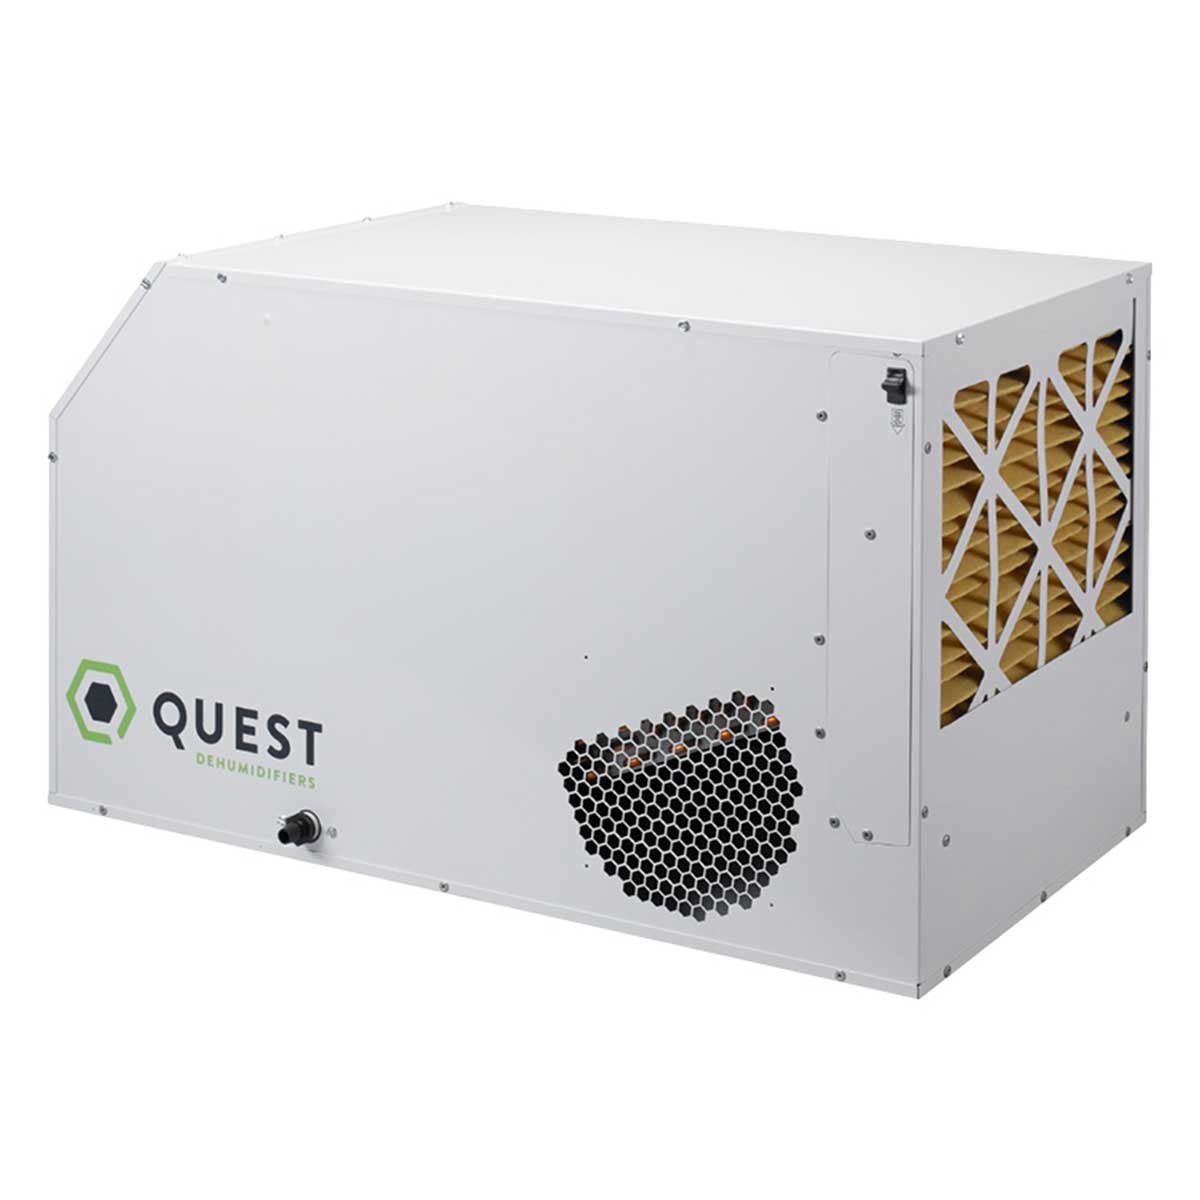 Quest Dual 225 Overhead Dehumidifier | Fullbloomlightdep.com